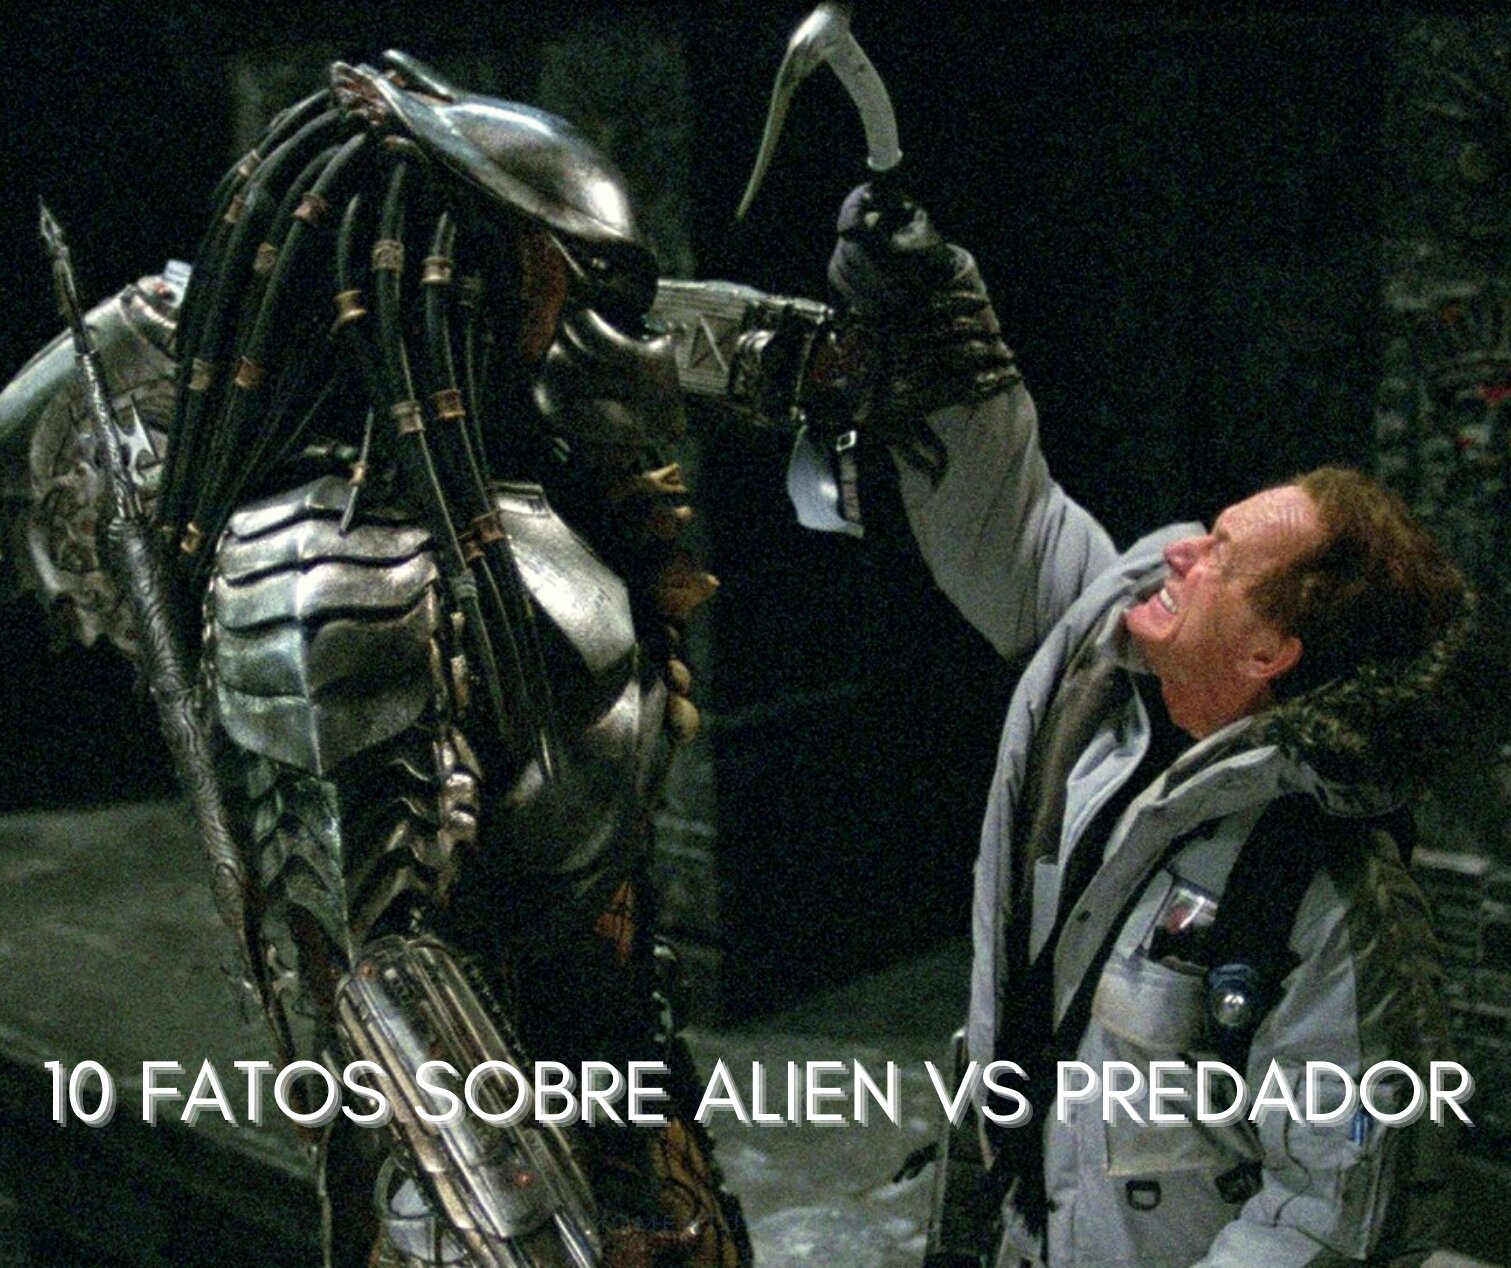 10 coisas que você não sabia sobre Alien vs. Predador